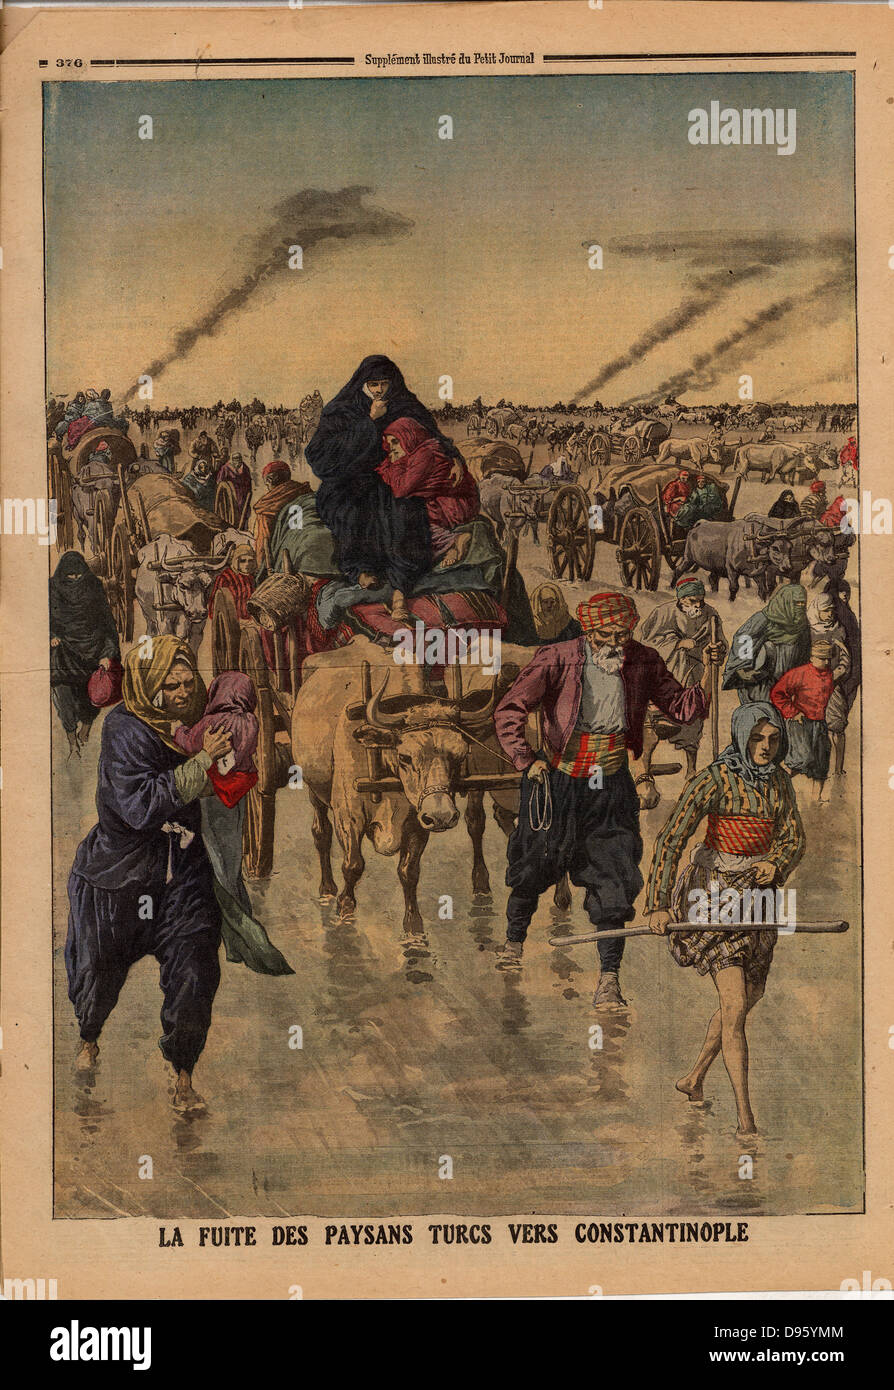 Balkan-Kriege: Flug der türkischen Bauern in Richtung Constantinople. Von "Le Petit Journal", Paris, 24. November 1912. Stockfoto